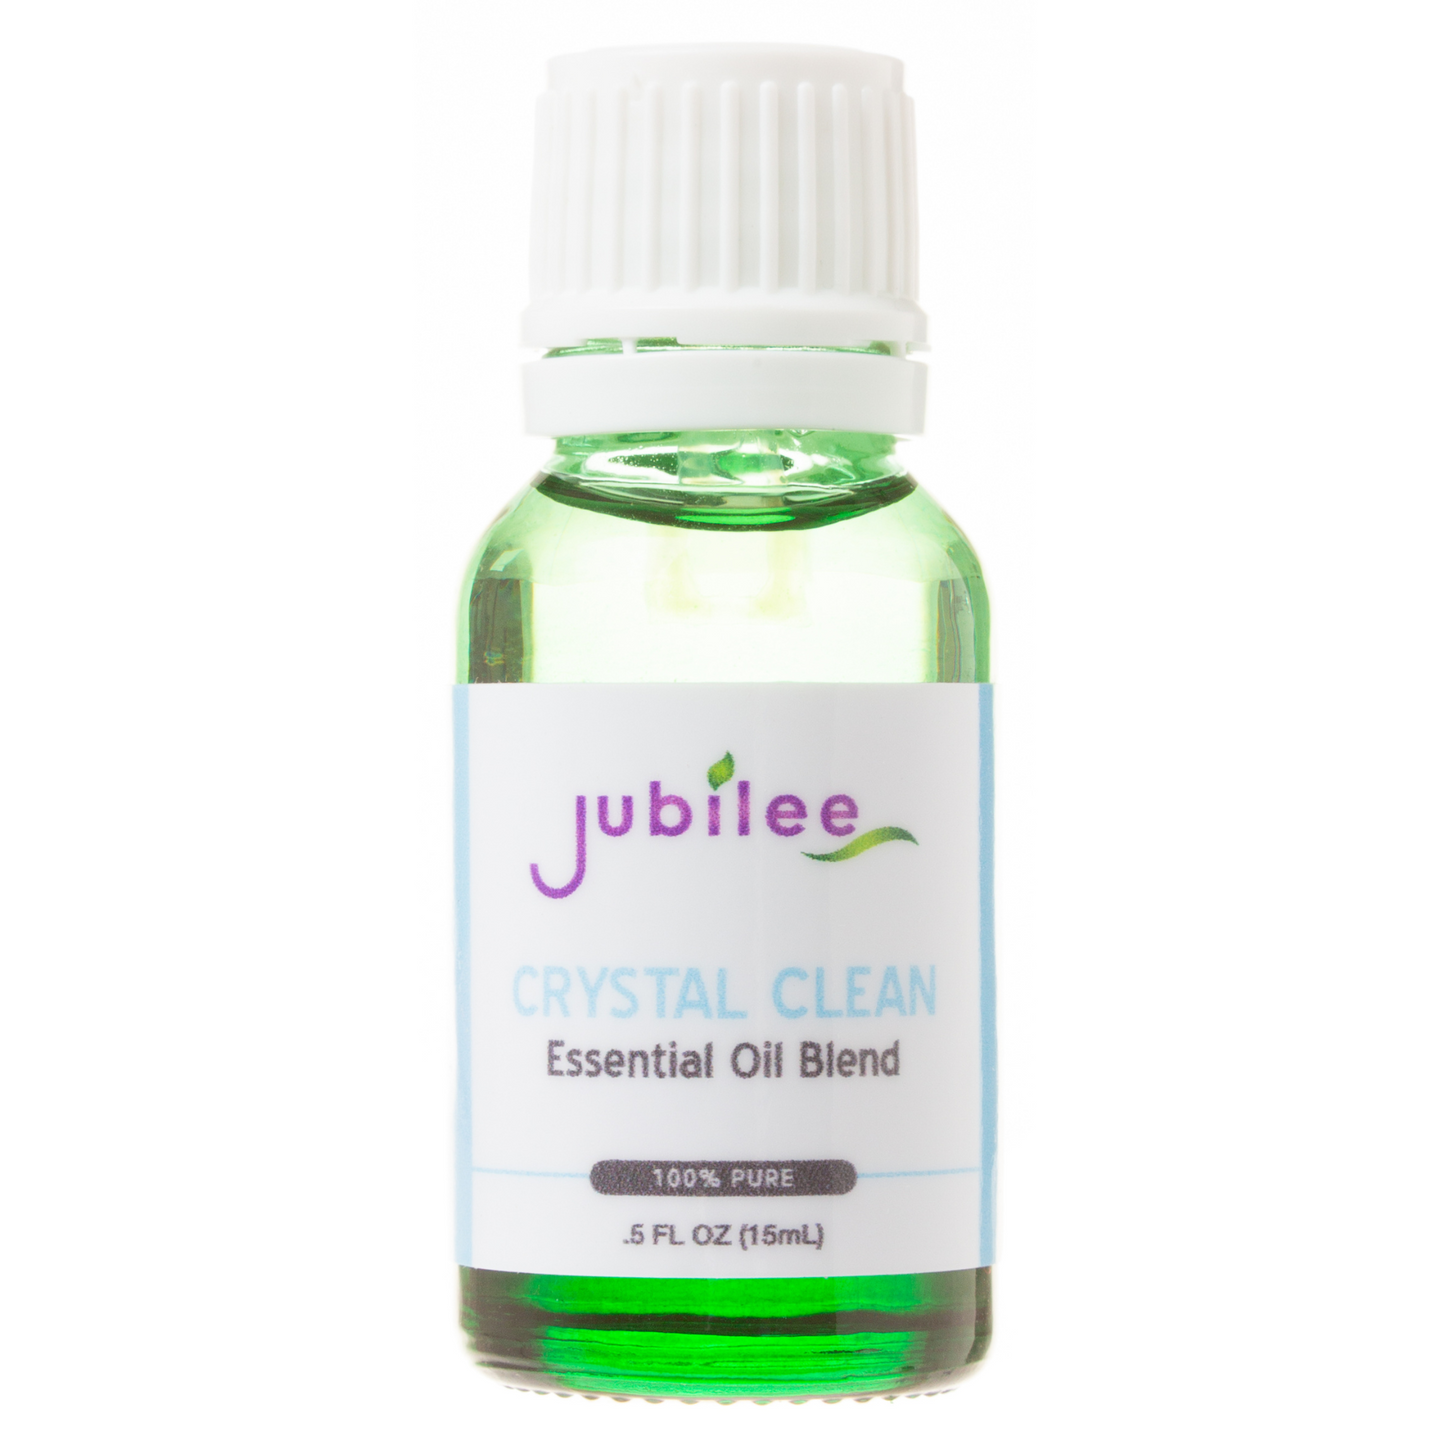 Crystal Clean Essential Oil Blend